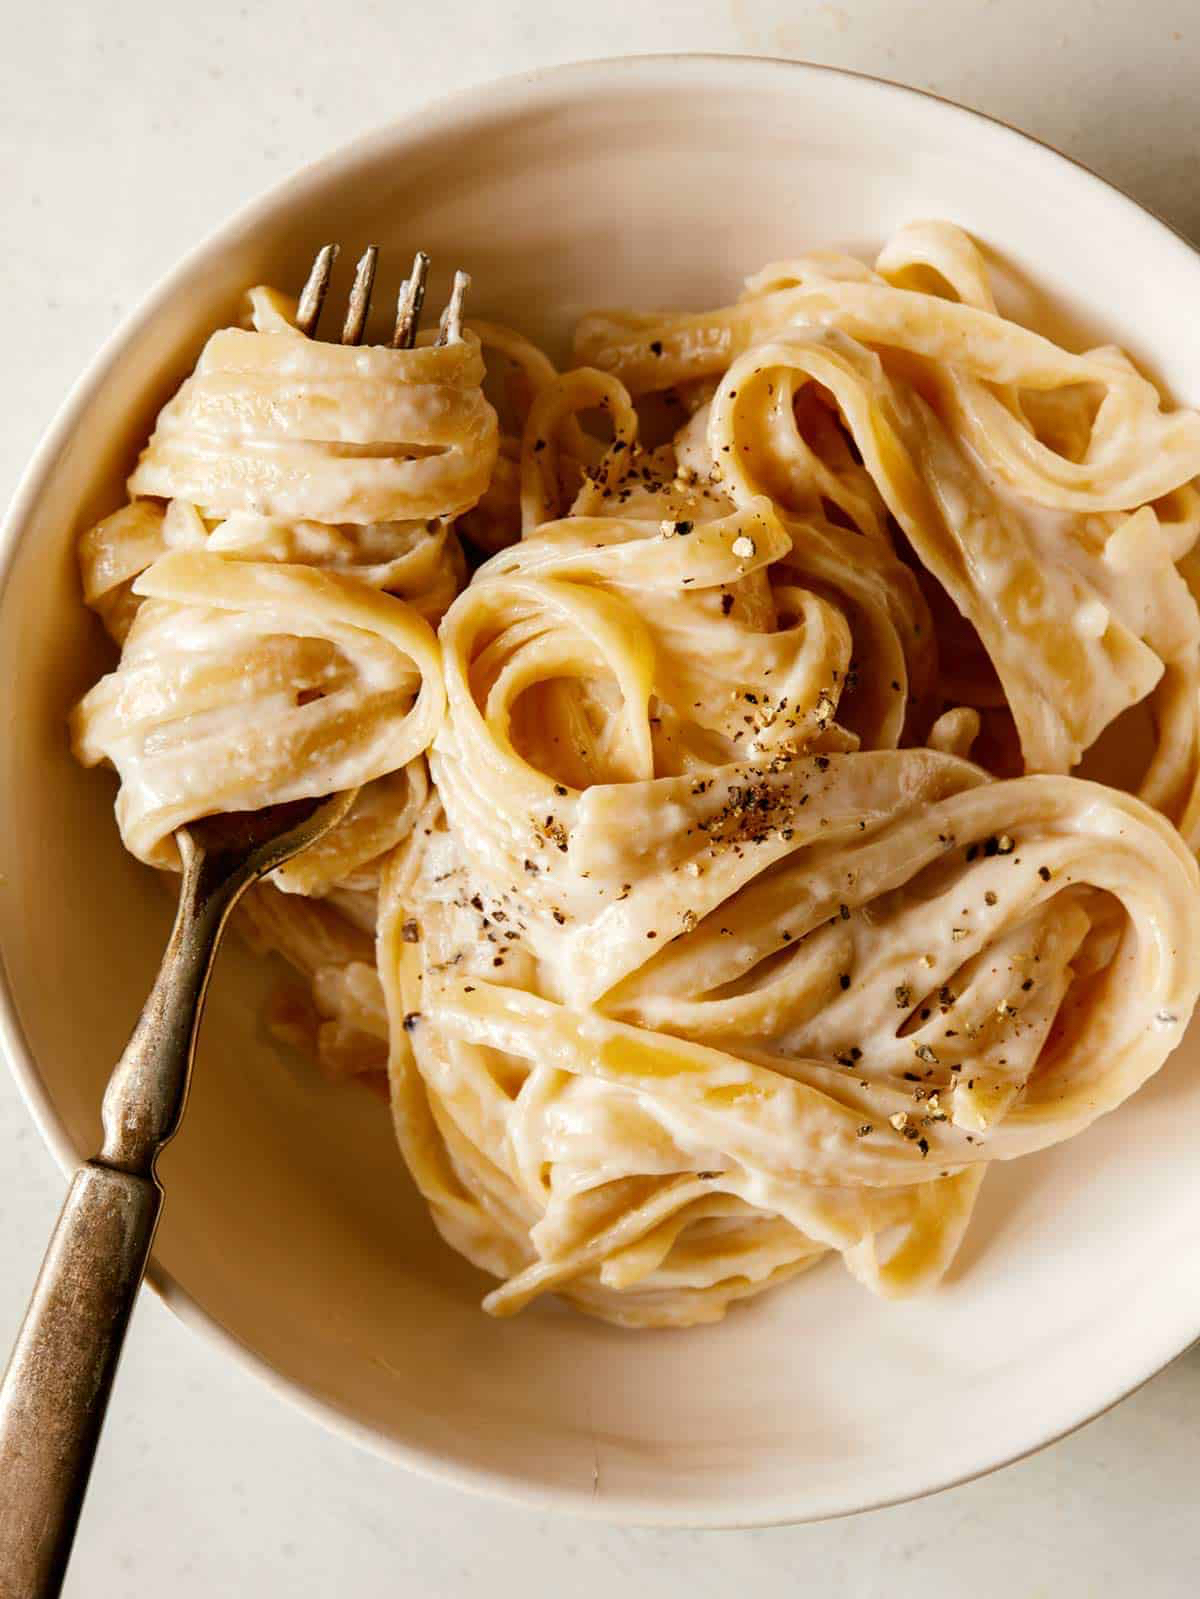 Italian Pasta Recipes